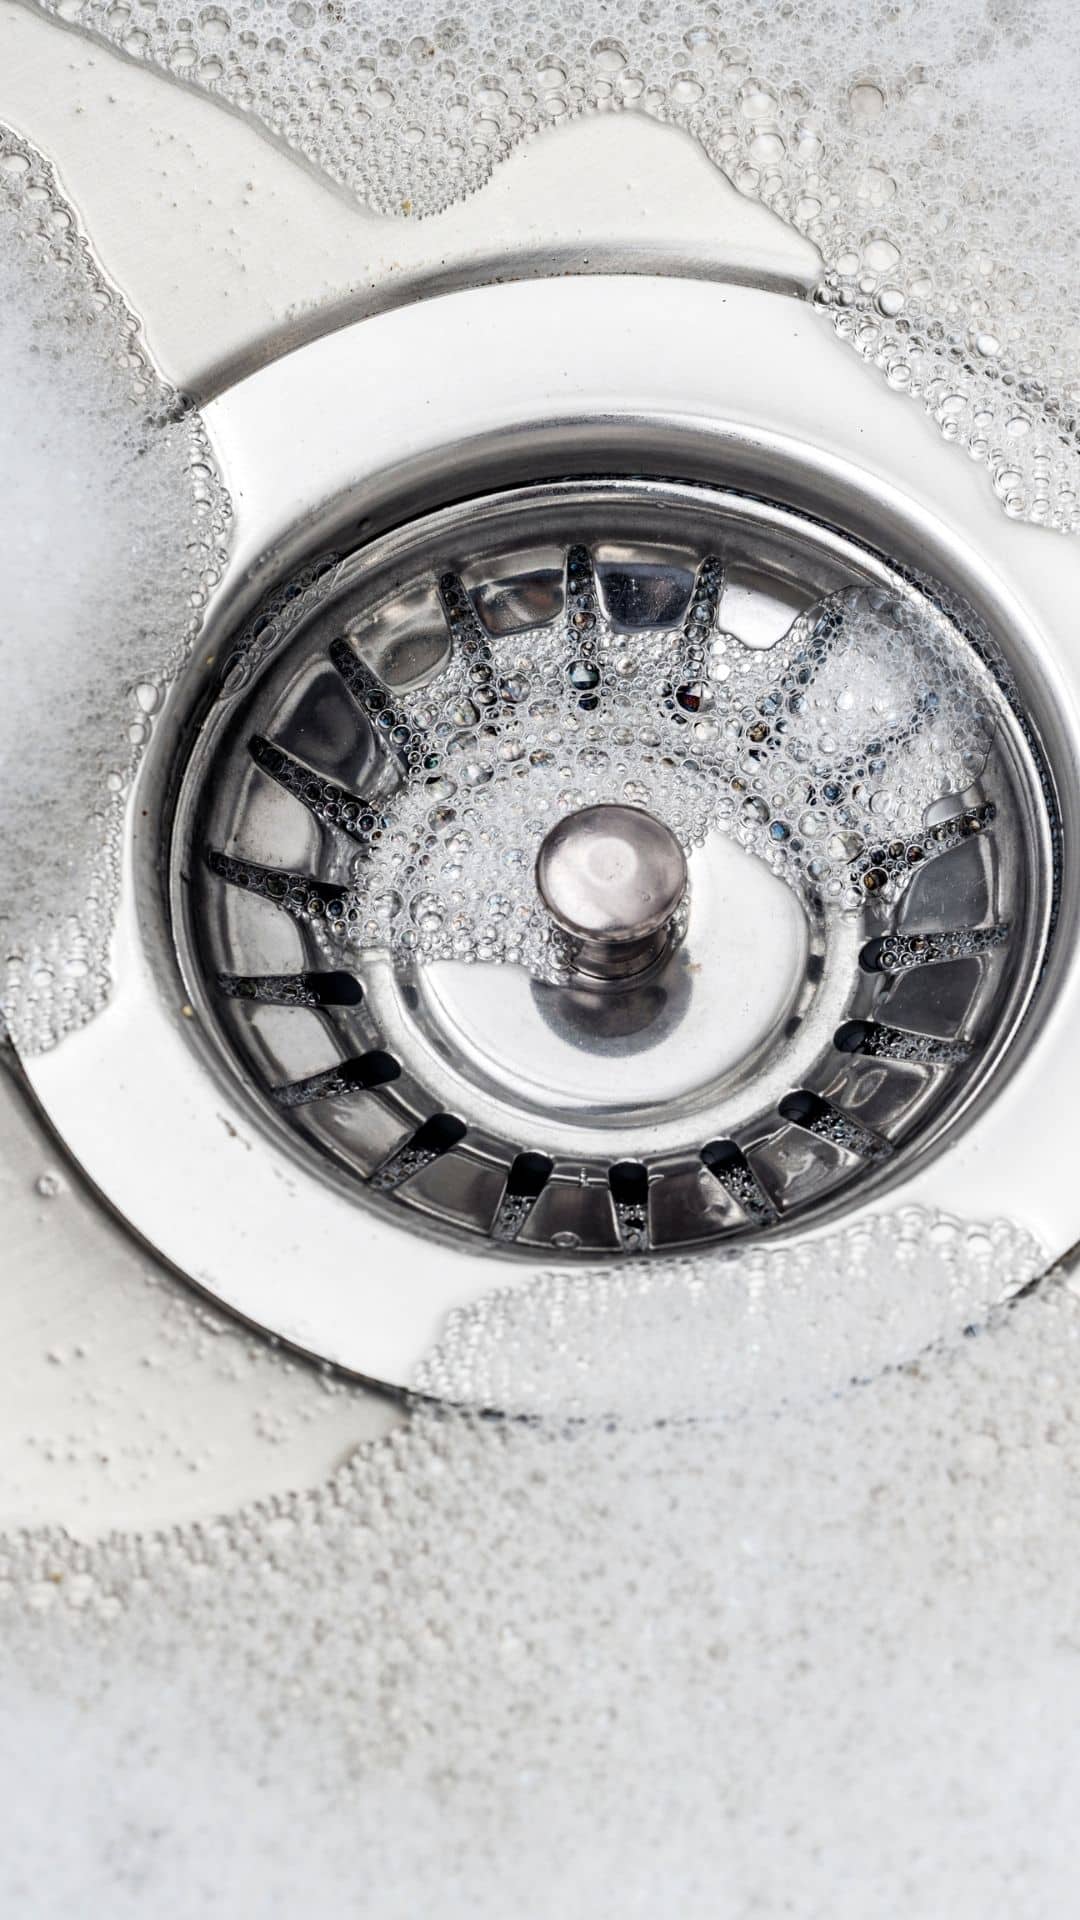 soap scum in sink drain leads to gunk buildup